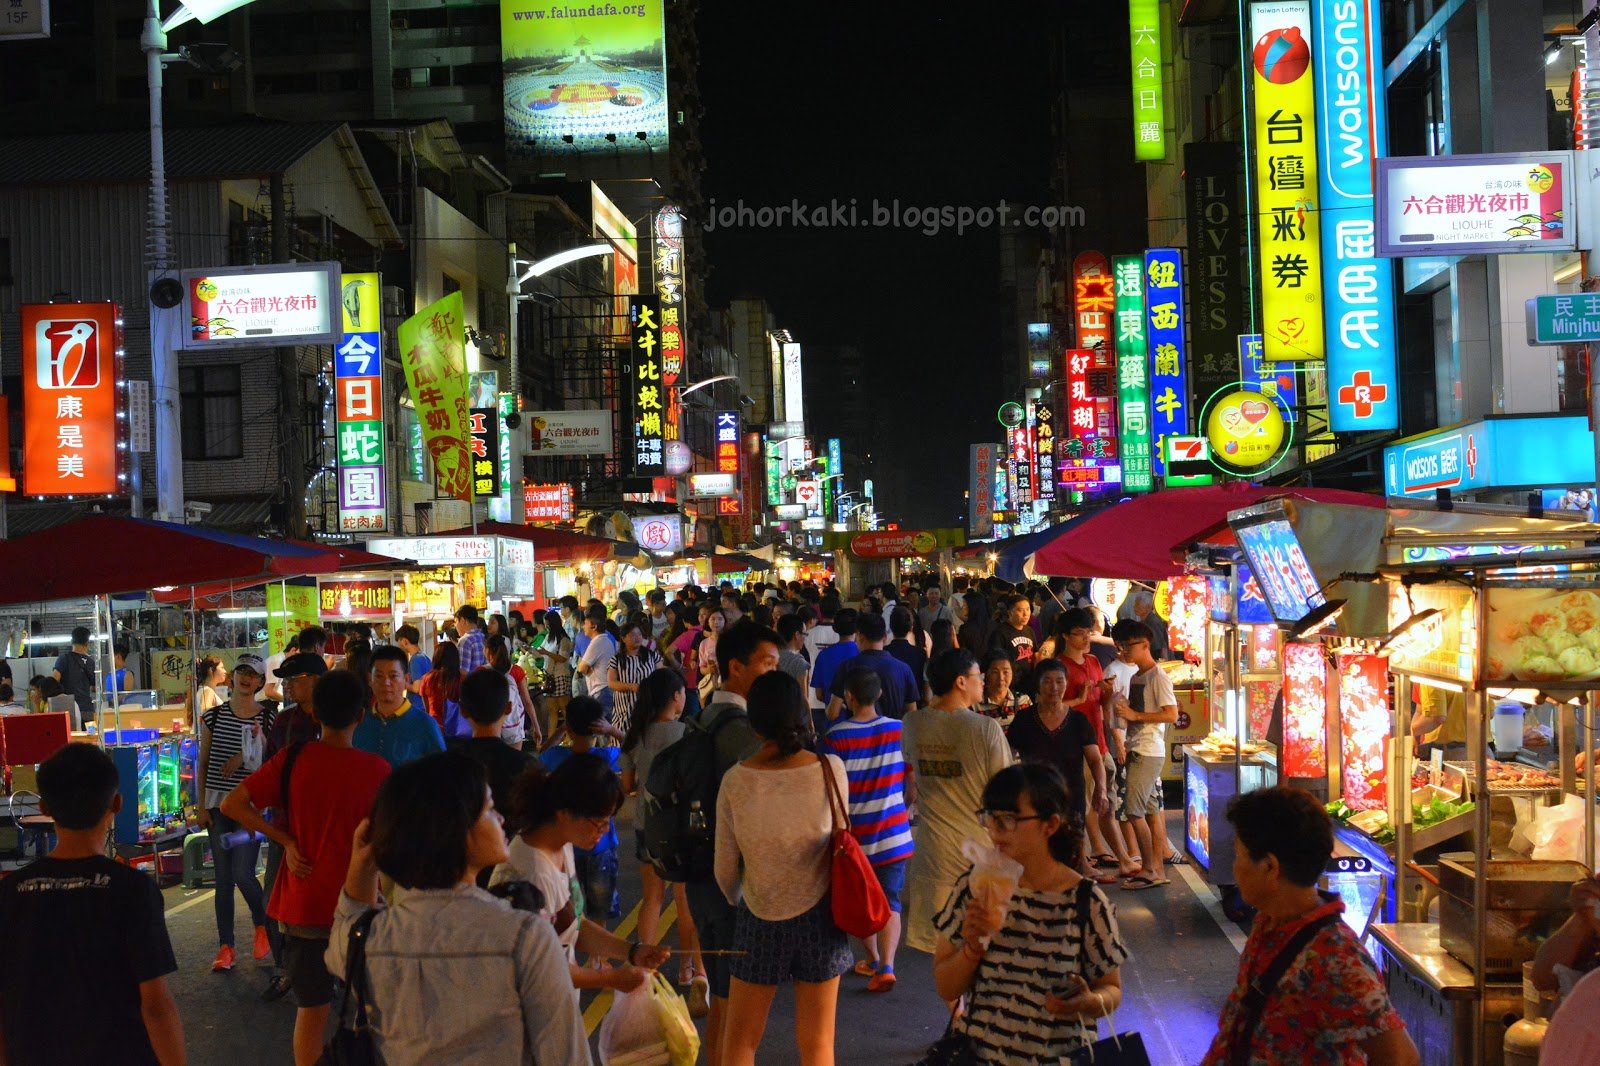 Ночной рынок гуанчжоу. Ночной рынок Хуньчунь. Ночной рынок сомун. Ночной рынок в Хуньчуне. Посещение ночного рынка (цюйдзинь.